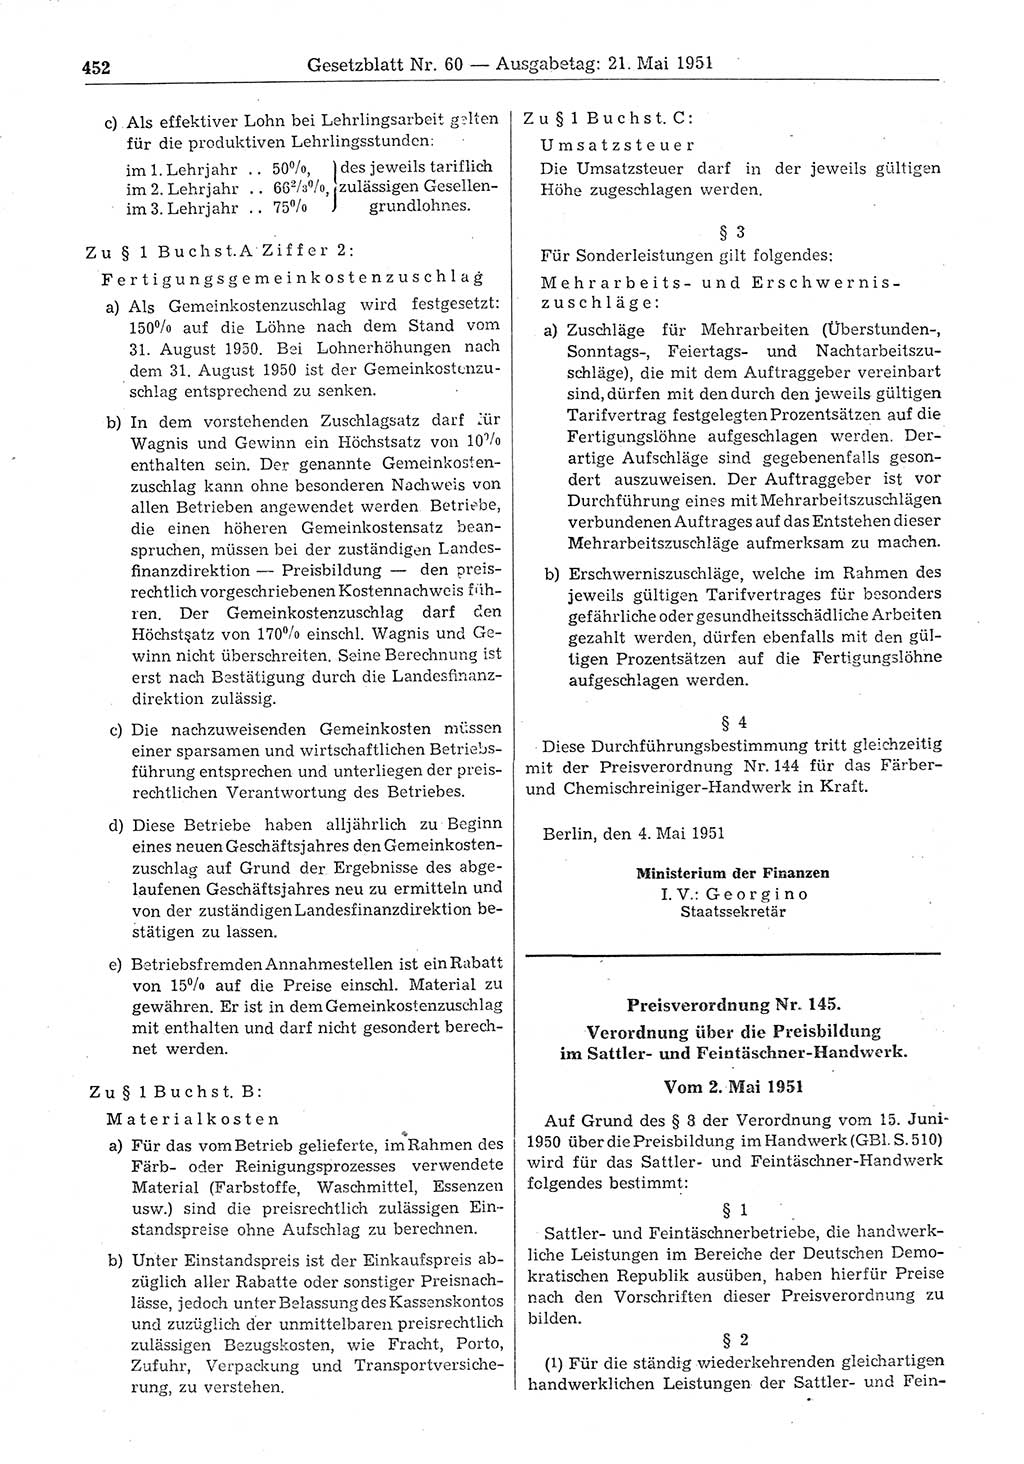 Gesetzblatt (GBl.) der Deutschen Demokratischen Republik (DDR) 1951, Seite 452 (GBl. DDR 1951, S. 452)